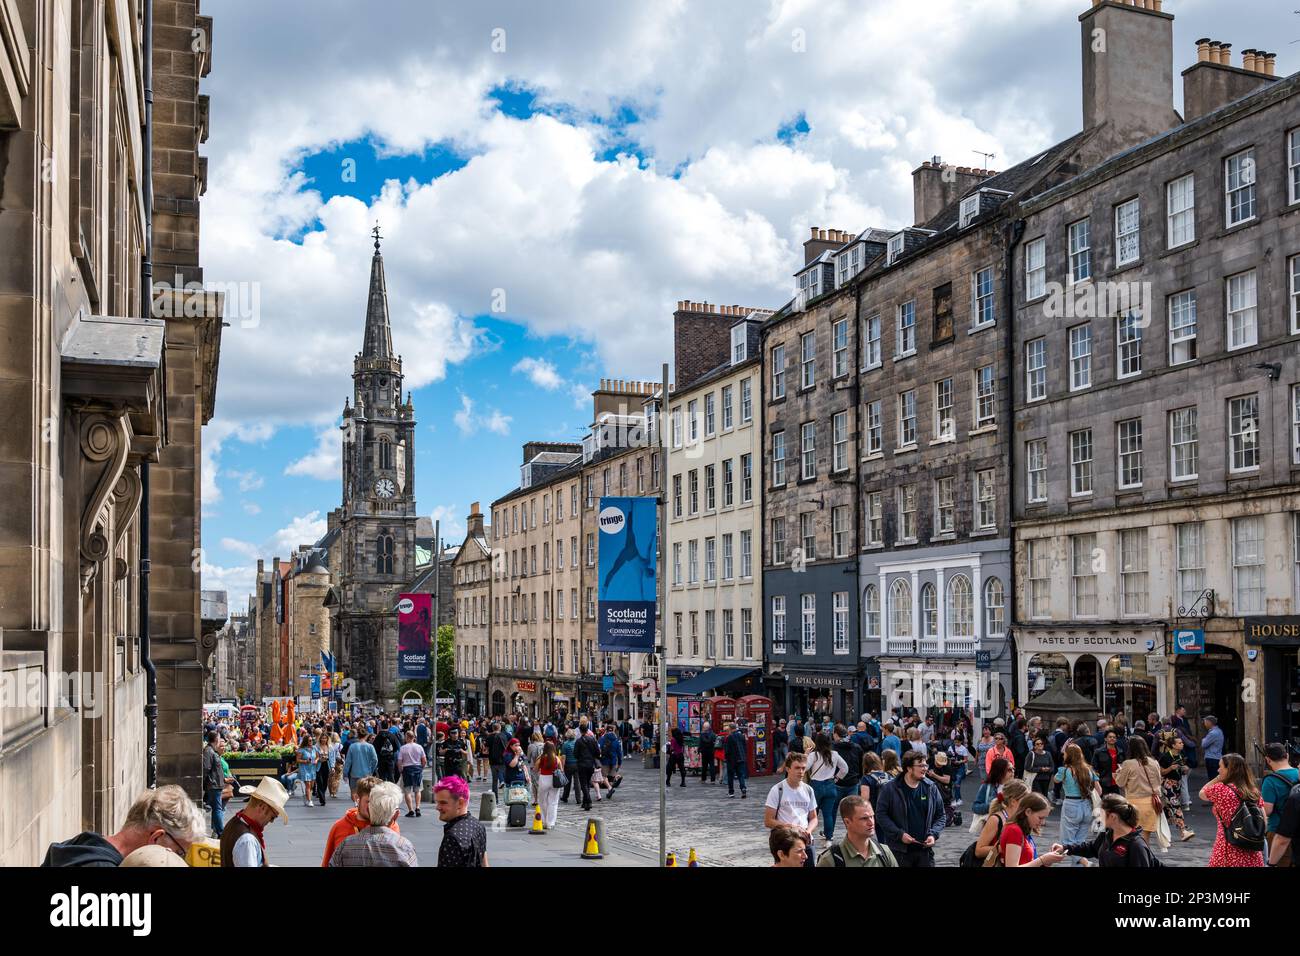 Crowded Royal Mile during the Fringe festival season, Edinburgh, Scotland, UK Stock Photo